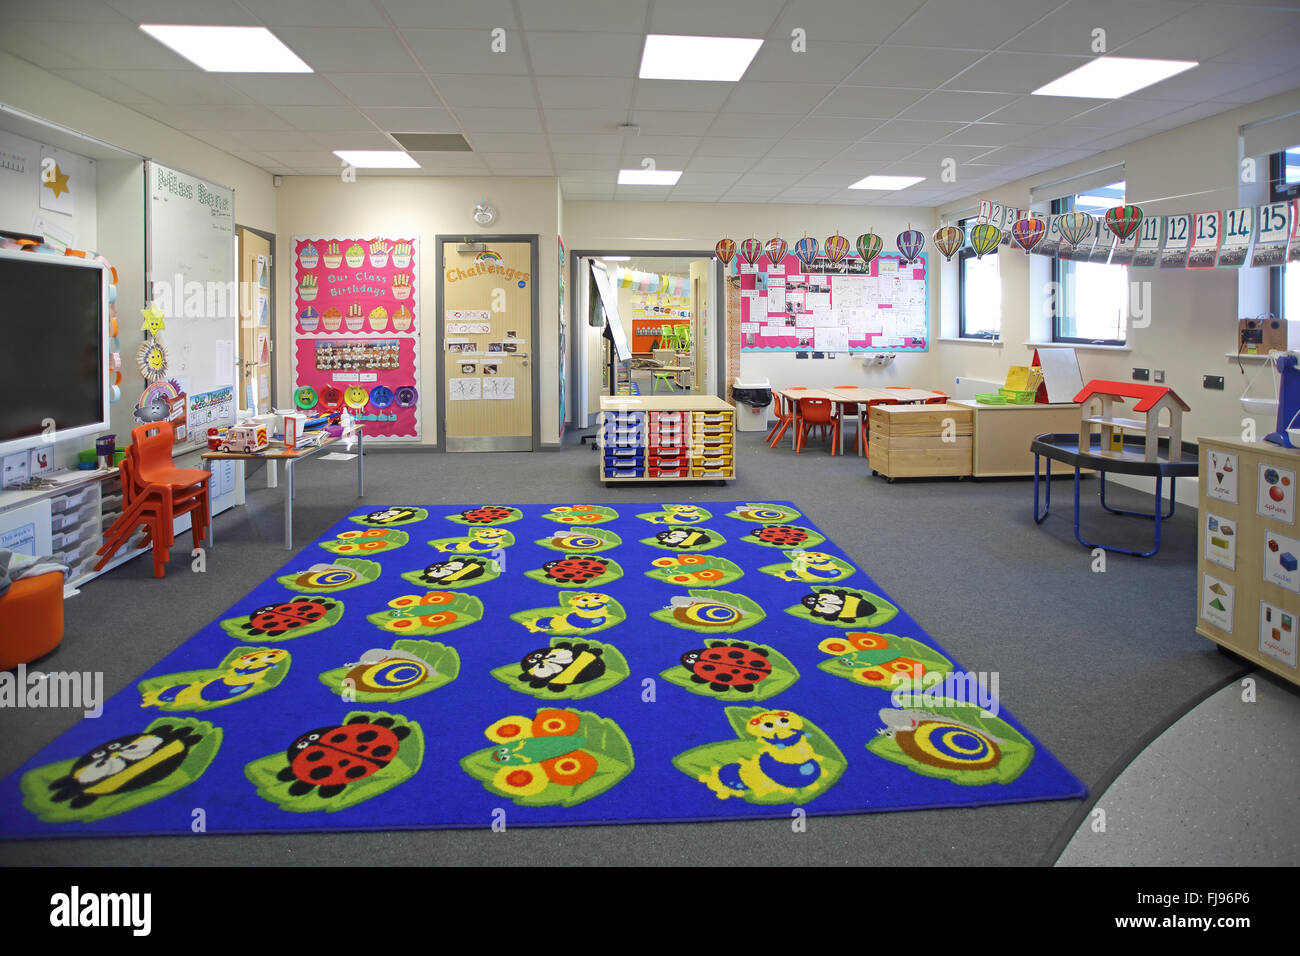 Vue intérieure d'une salle de classe en maternelle dans une nouvelle école primaire britannique. Vide, pas d'élèves. Banque D'Images